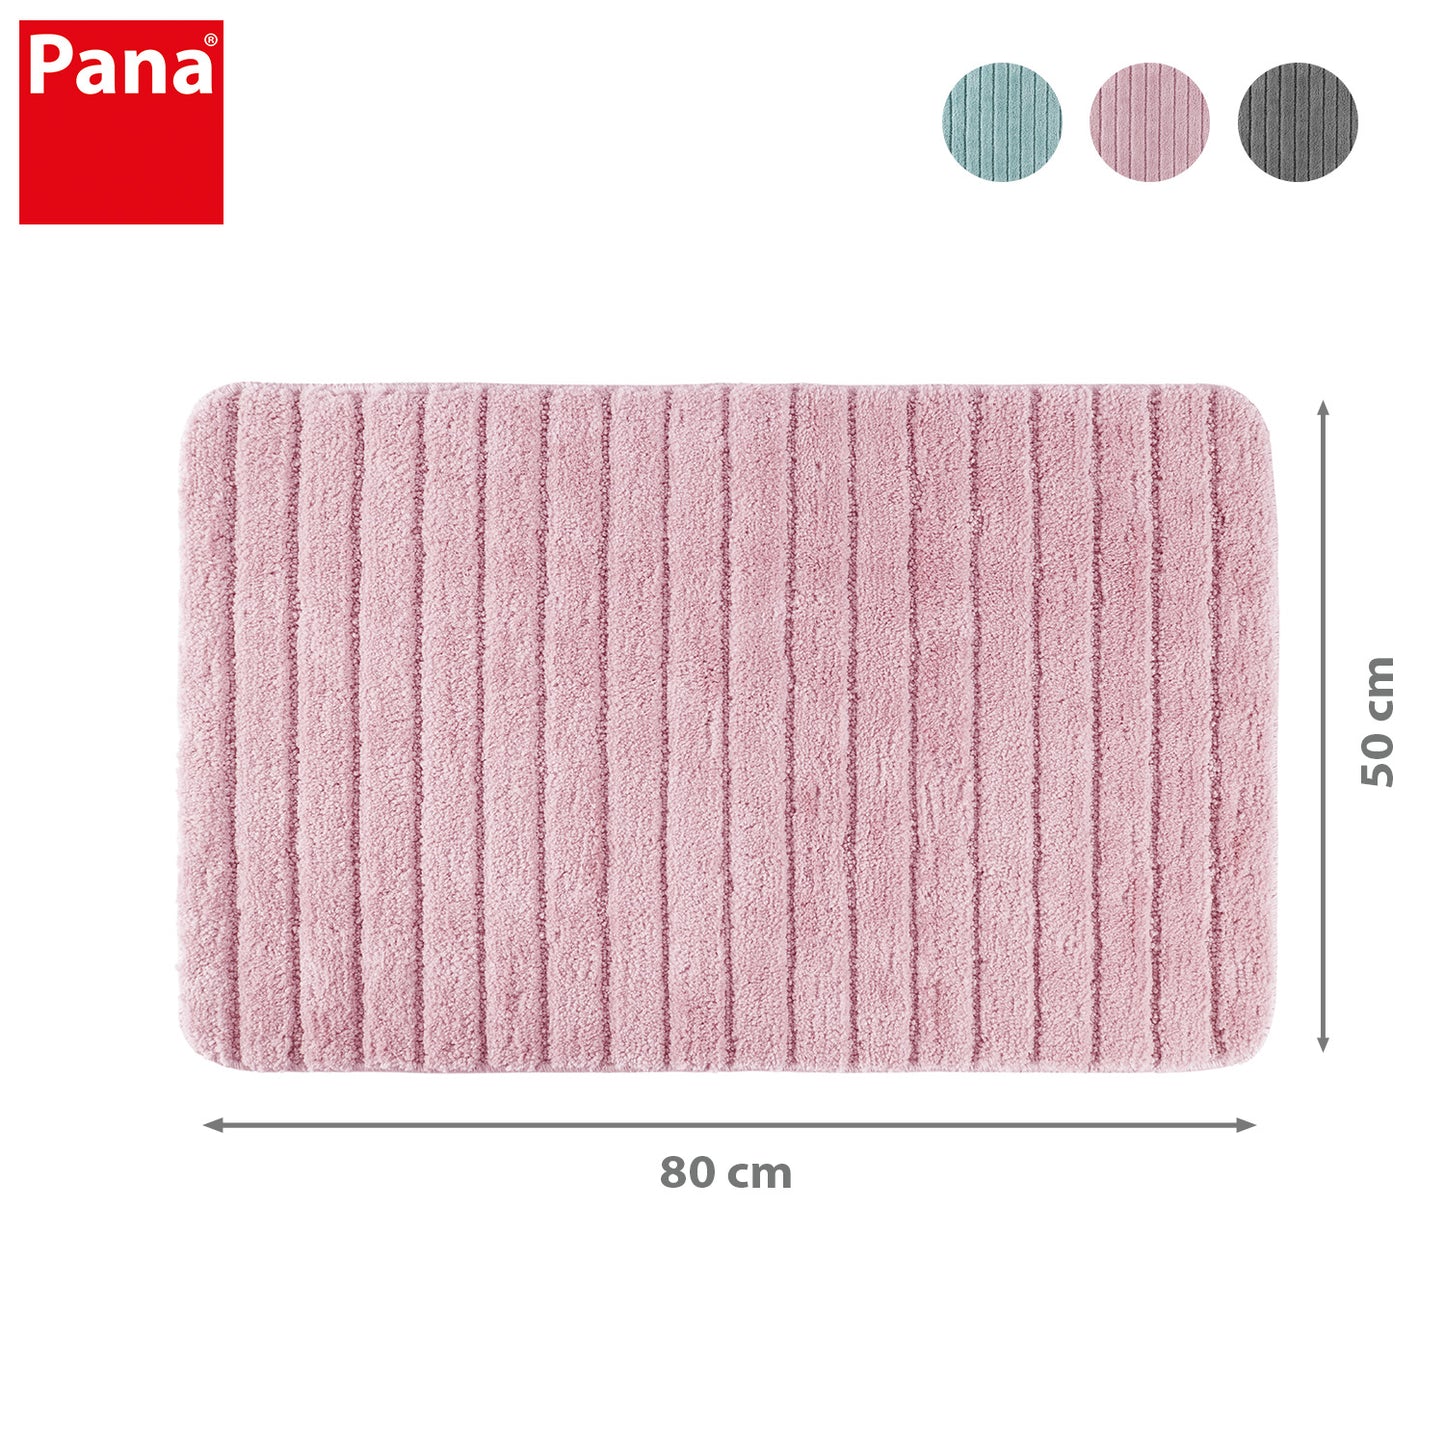 PANA® Mikrofaser Badematten Serie • versch. Formen, Größen & Farben